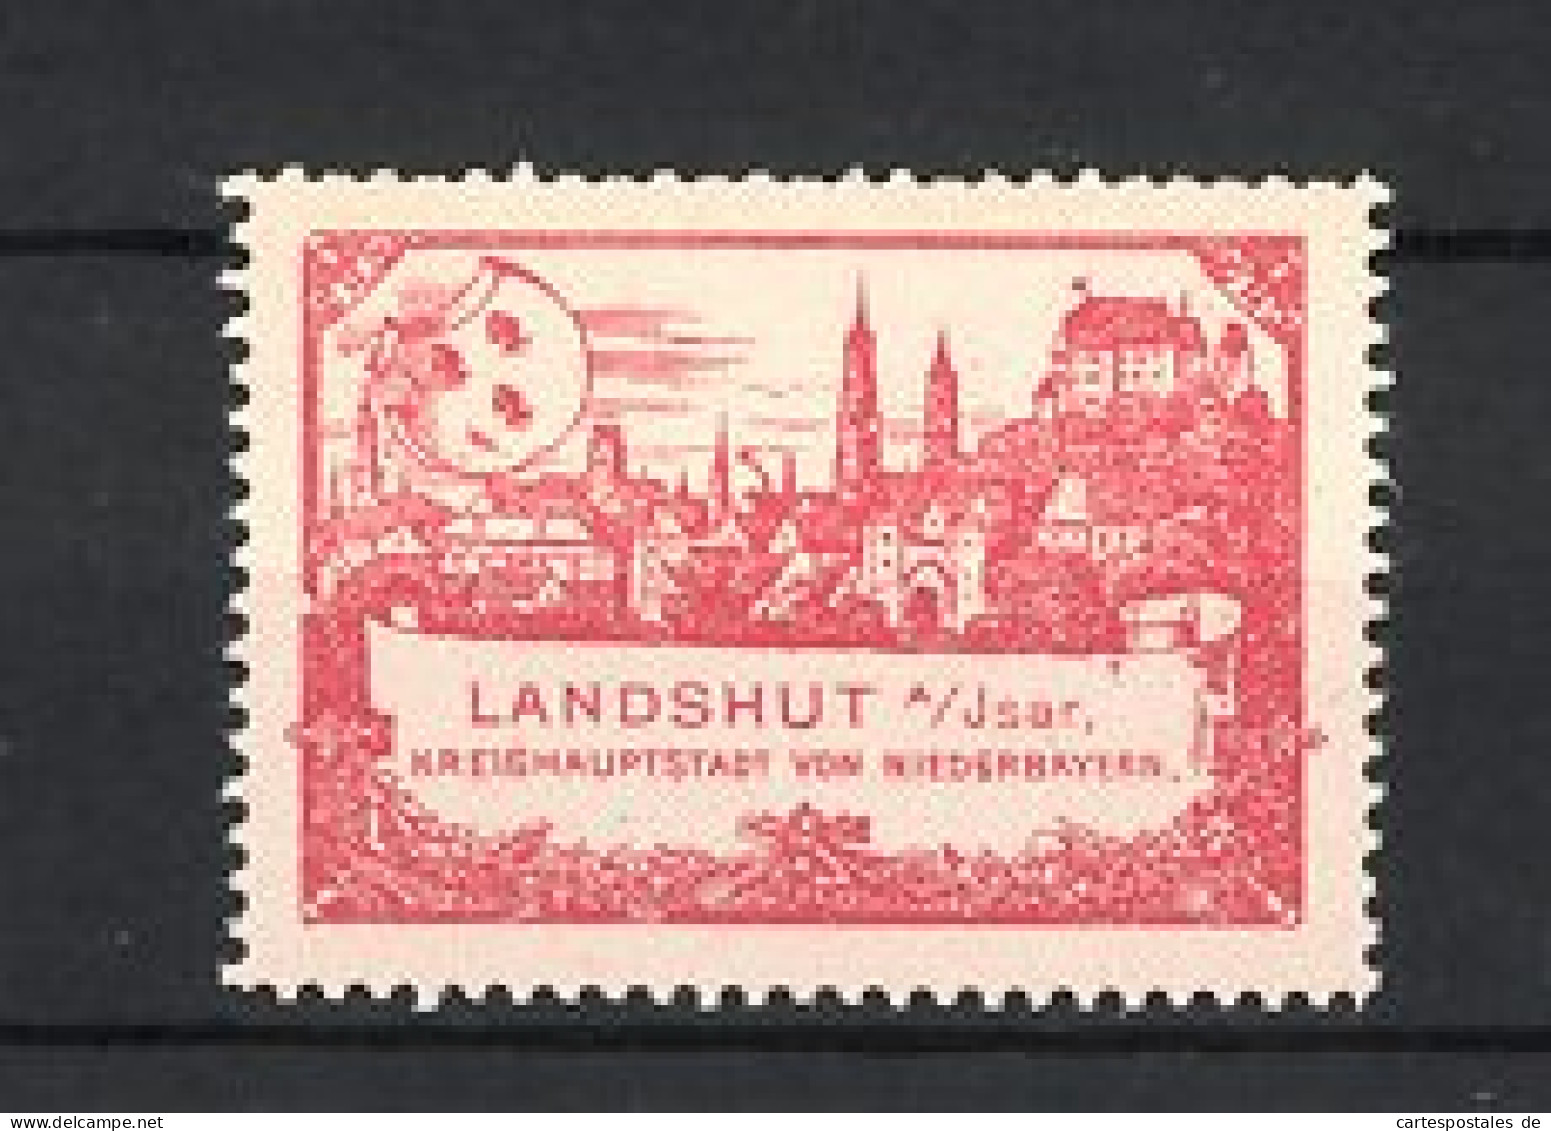 Reklamemarke Landshut, Kreishauptstadt Niederbayern, Wappen Und Stadtansicht, Rot  - Vignetten (Erinnophilie)